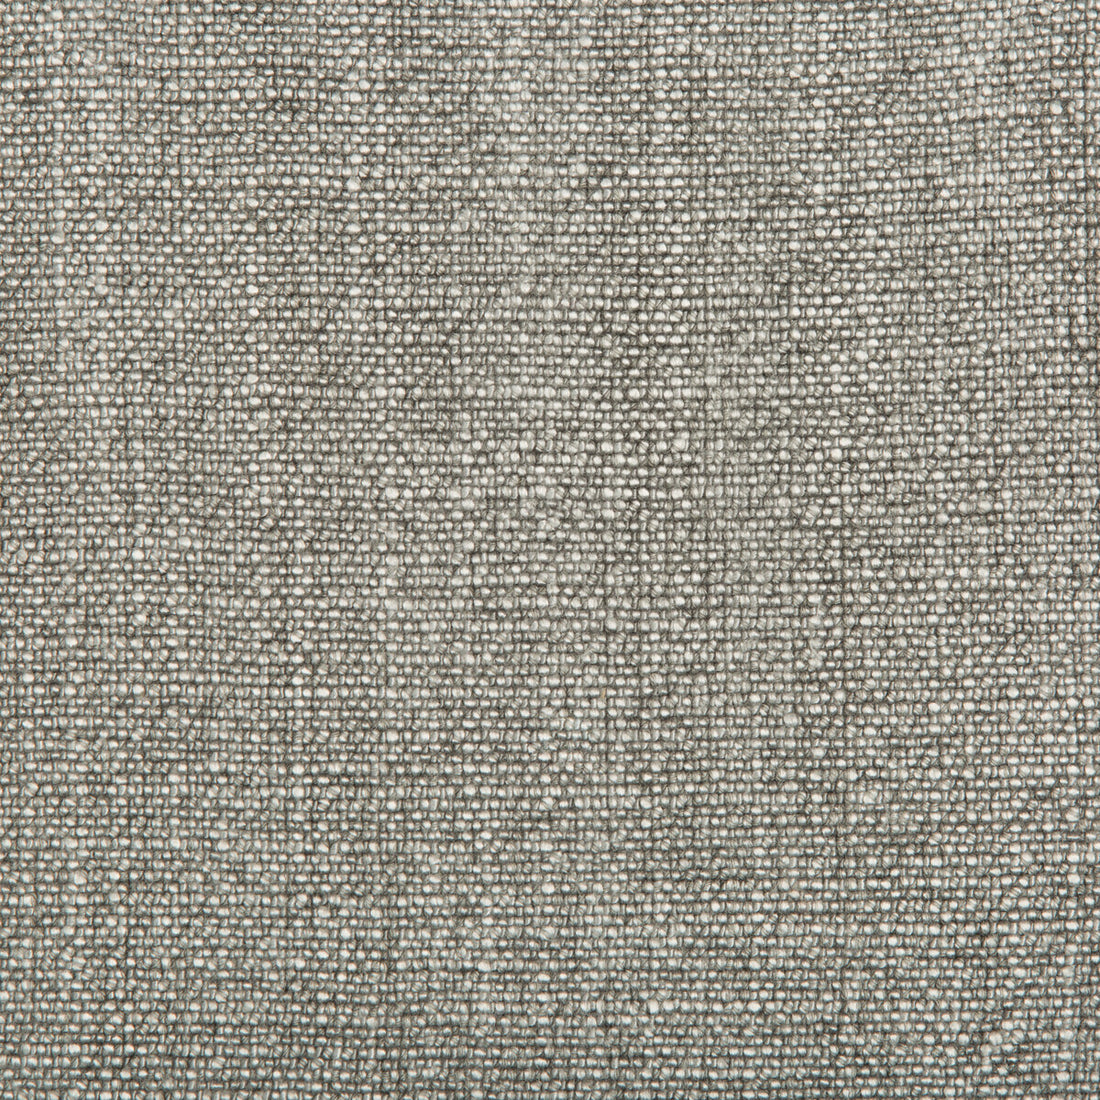 Kravet Basics fabric in 35189-2111 color - pattern 35189.2111.0 - by Kravet Basics